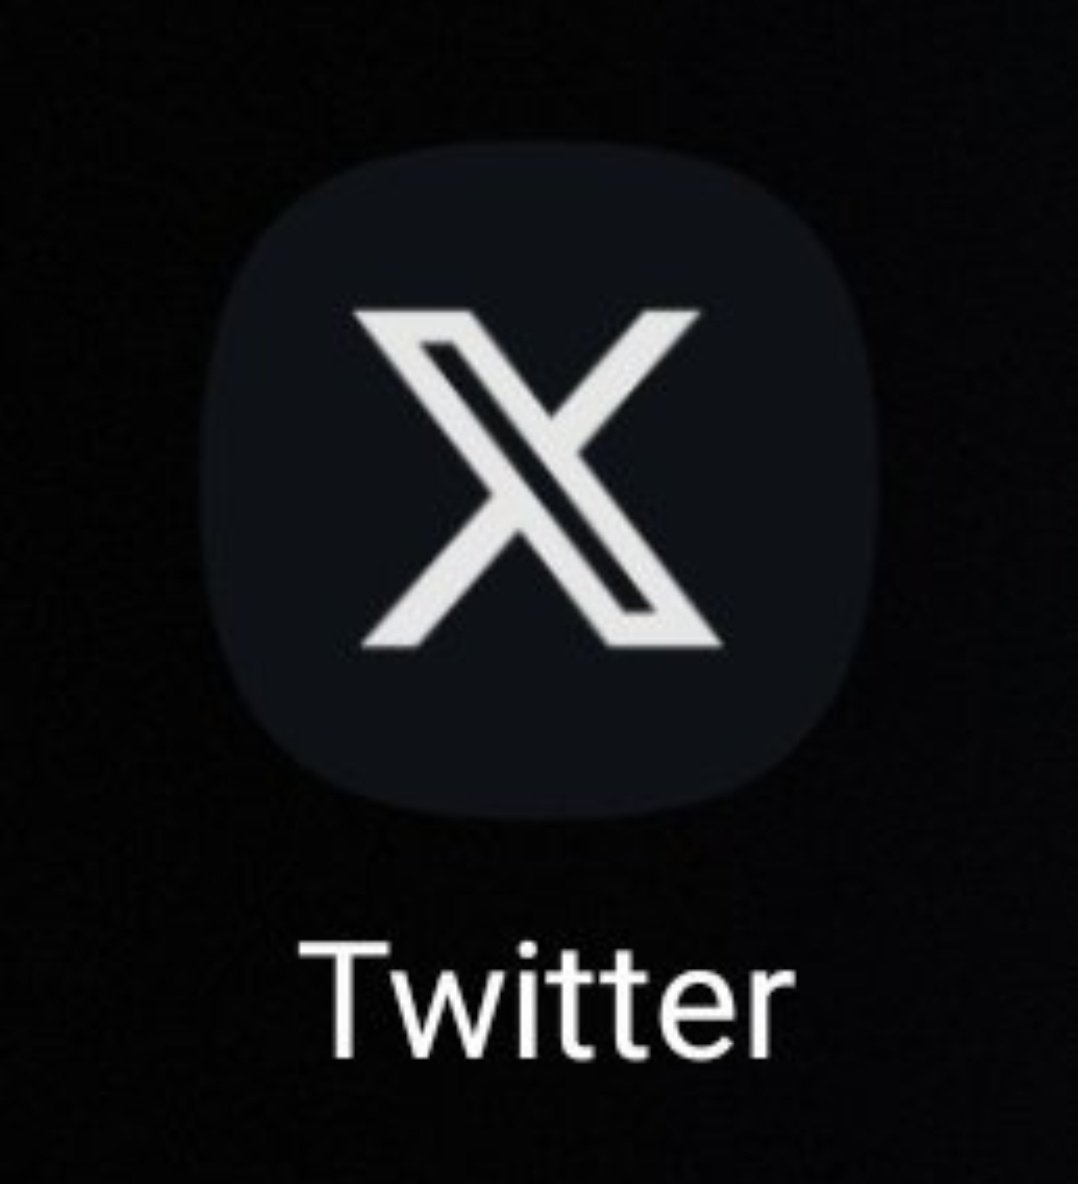 Olhei a tela do celular, vi um app com X e pensei: Que porcaria é essa que eu não baixei?! Olhei de novo e era o meu Twitter. Elon Musk, não te perdoo por isso